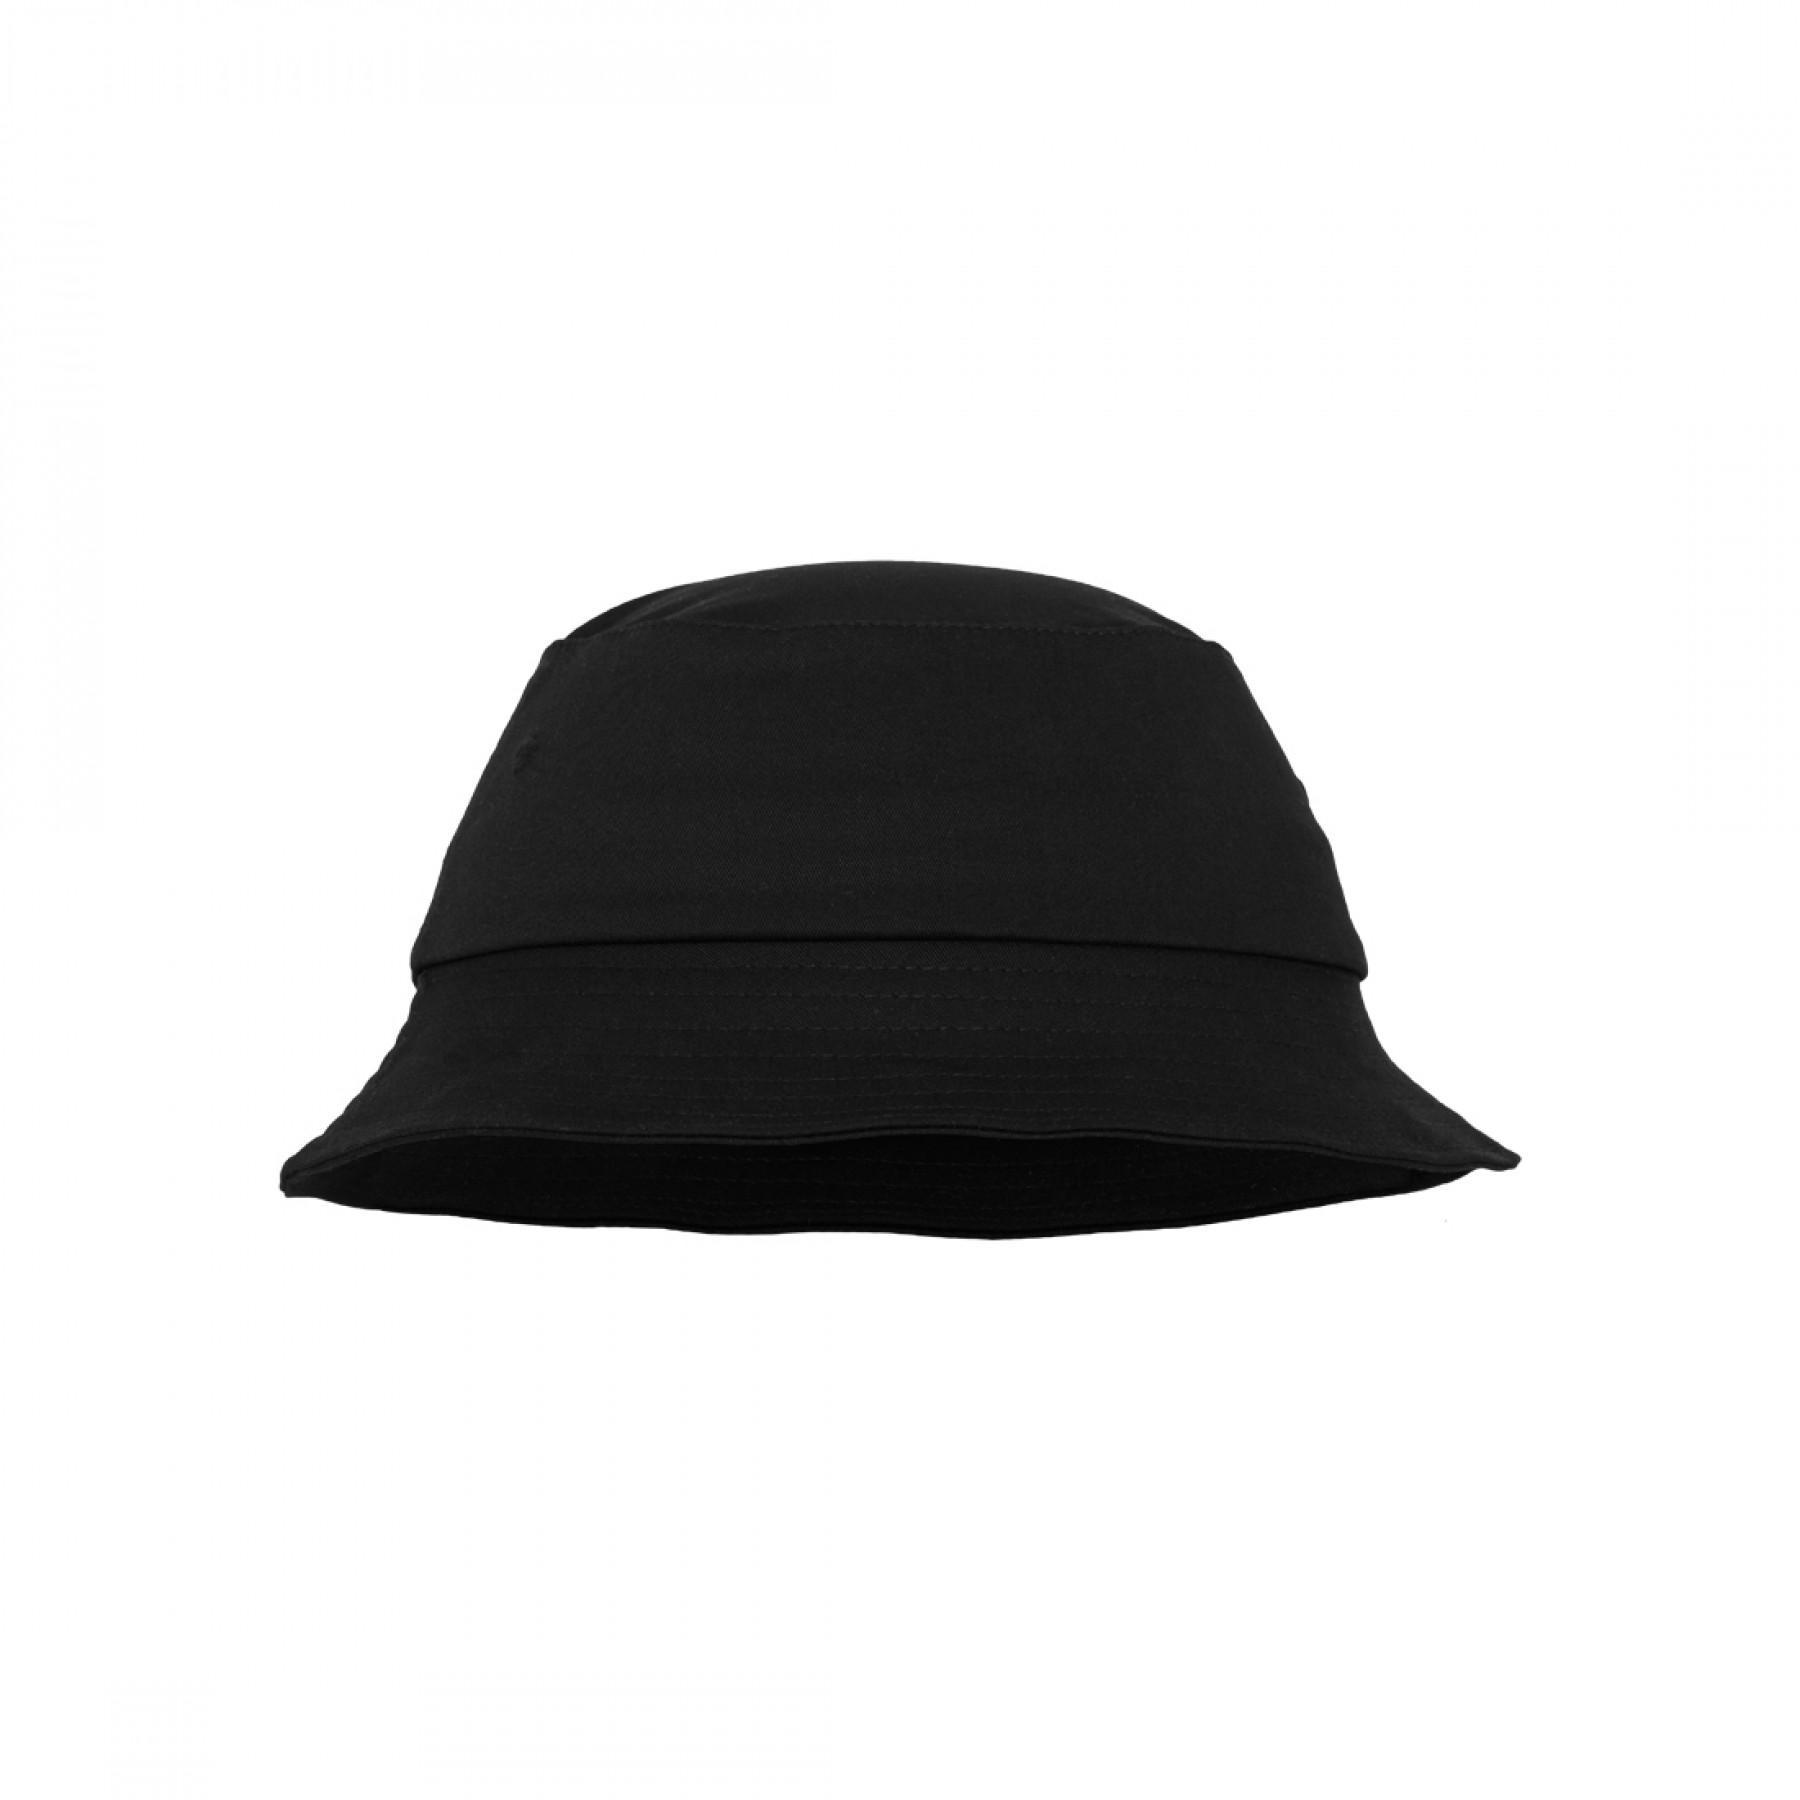 Hat Flexfit cotton twill